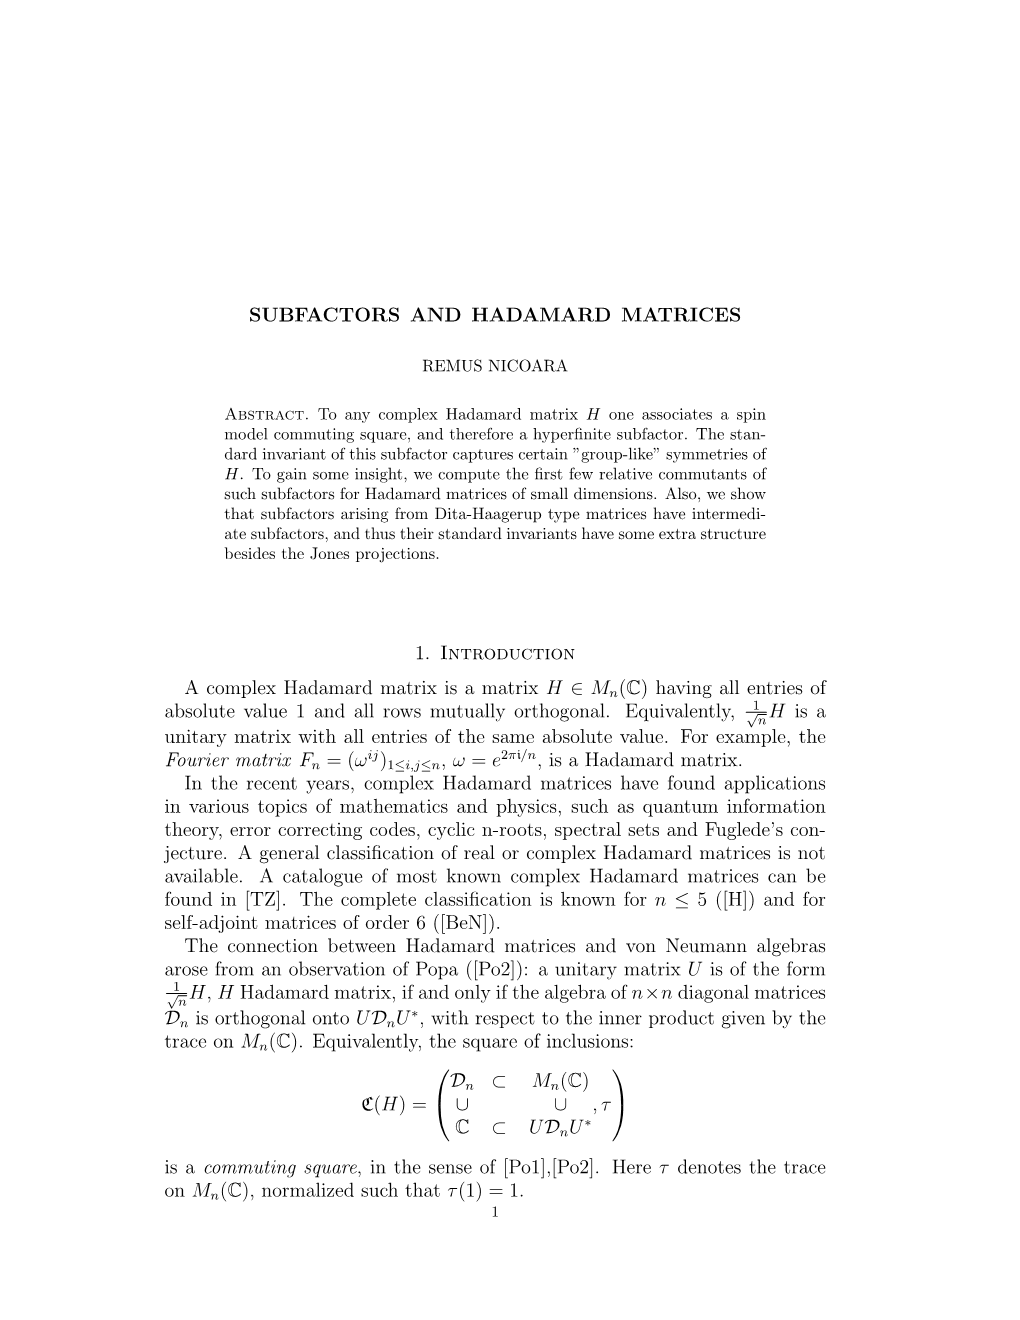 Subfactors and Hadamard Matrices 11